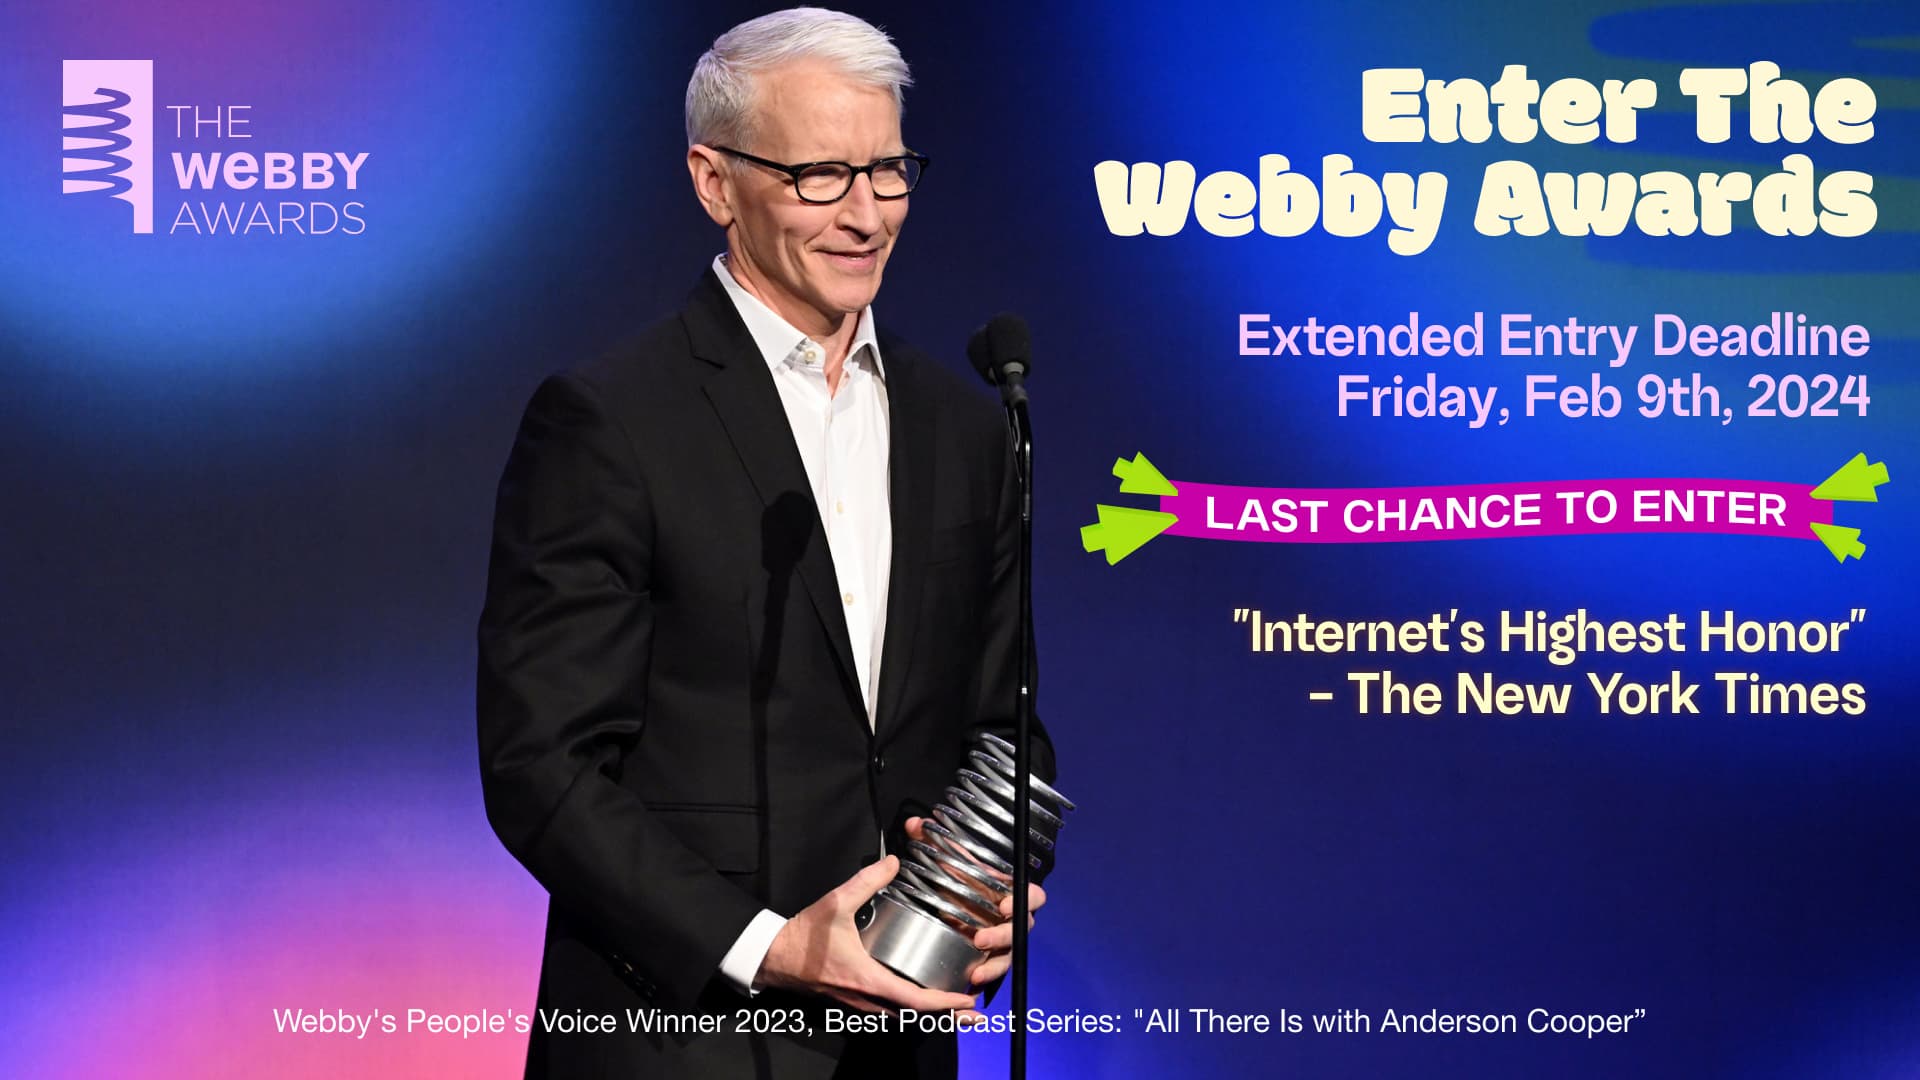 The Webbys